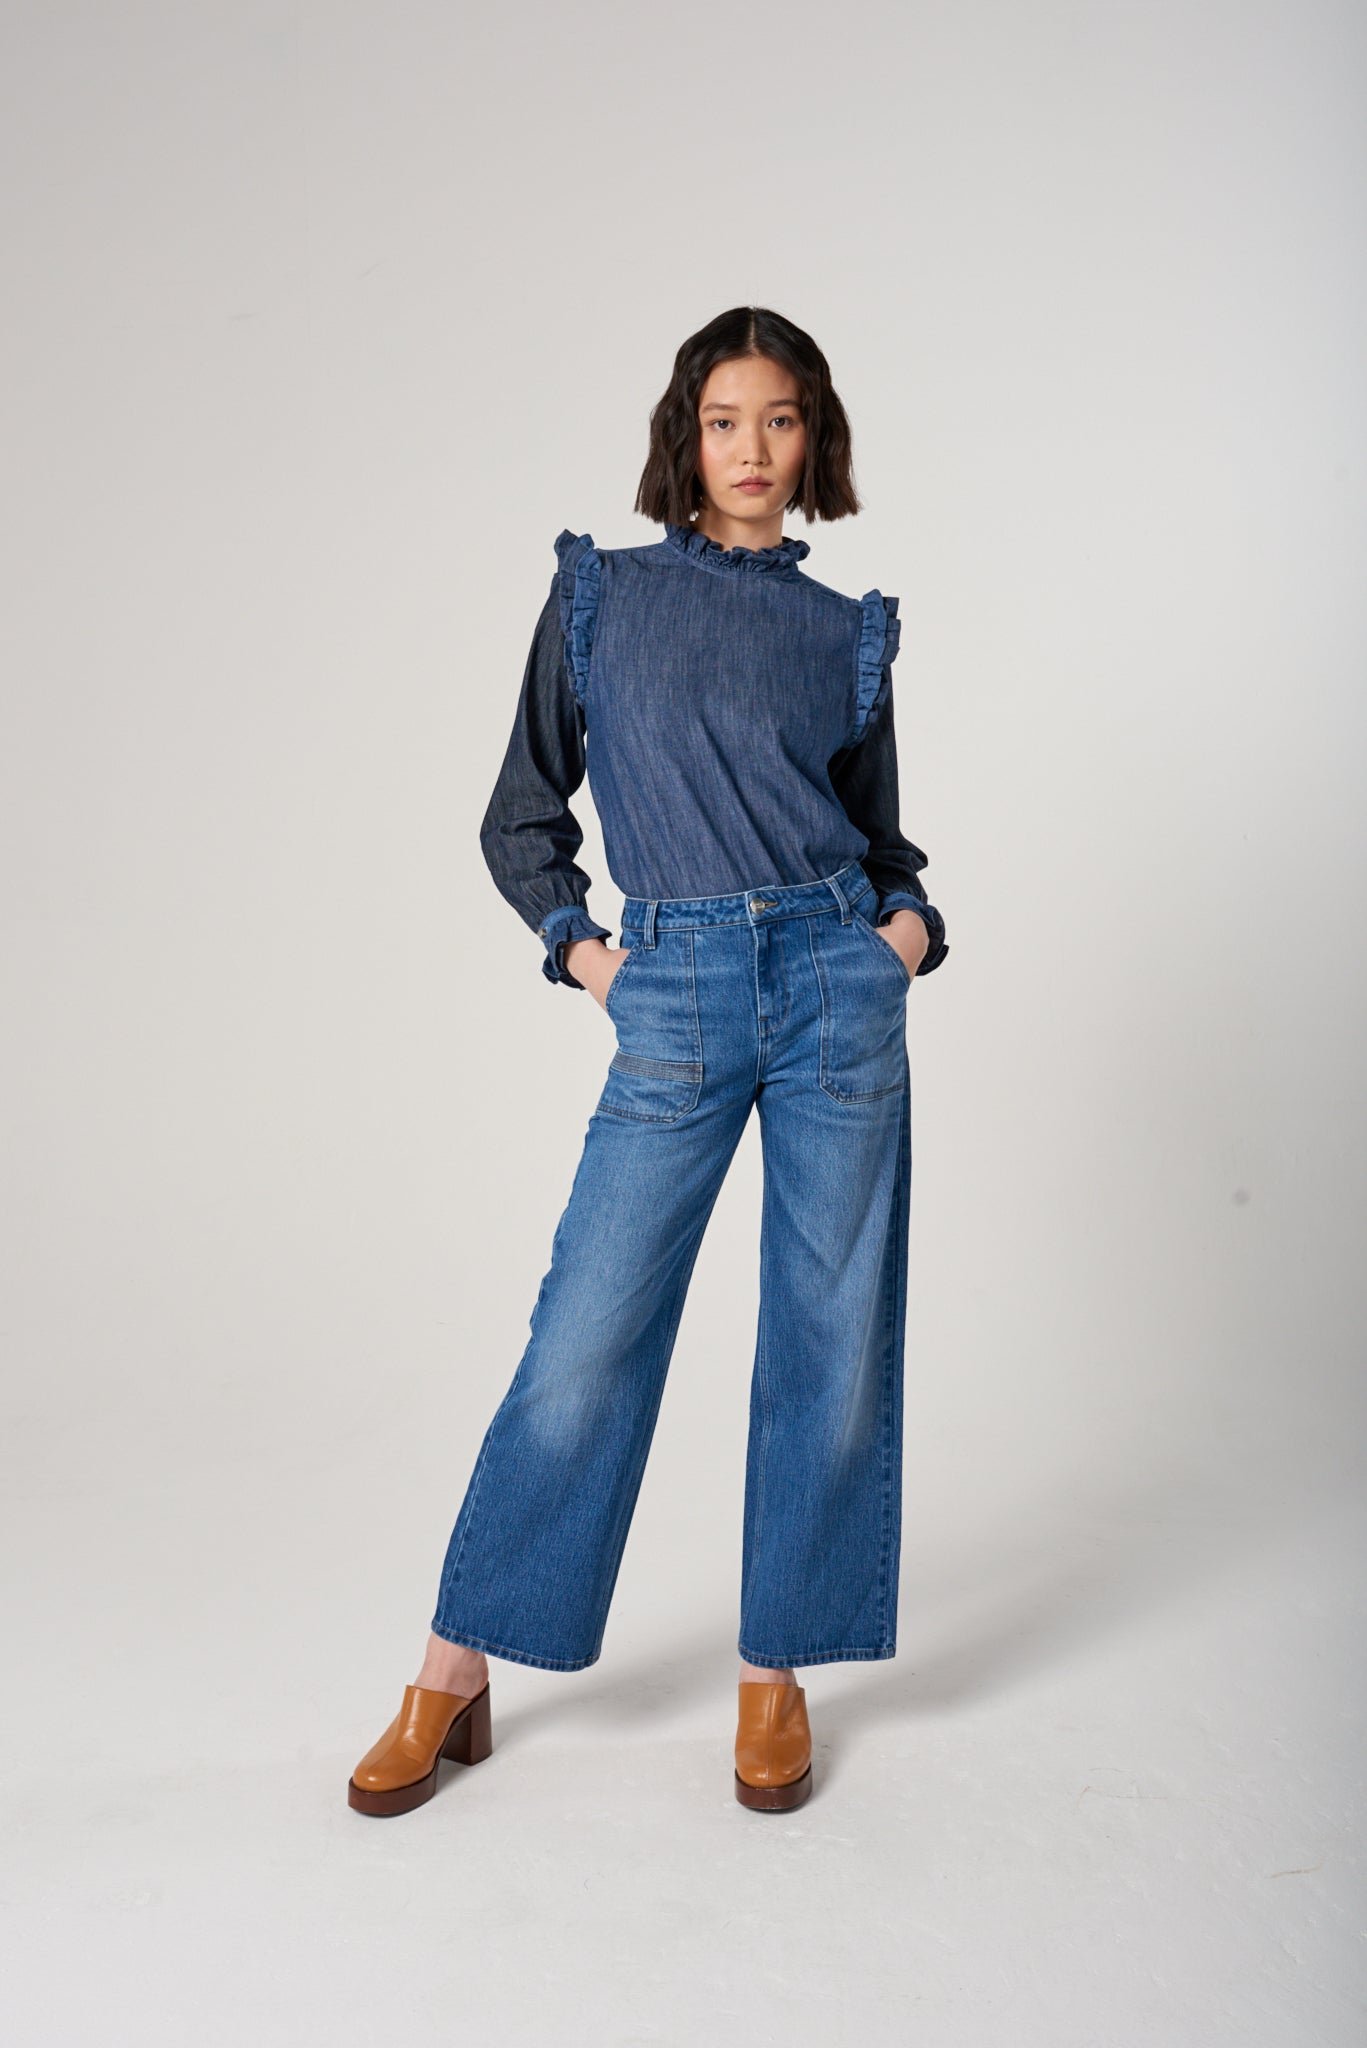 Elodie Full Length Jean in Desert Vintage Americana